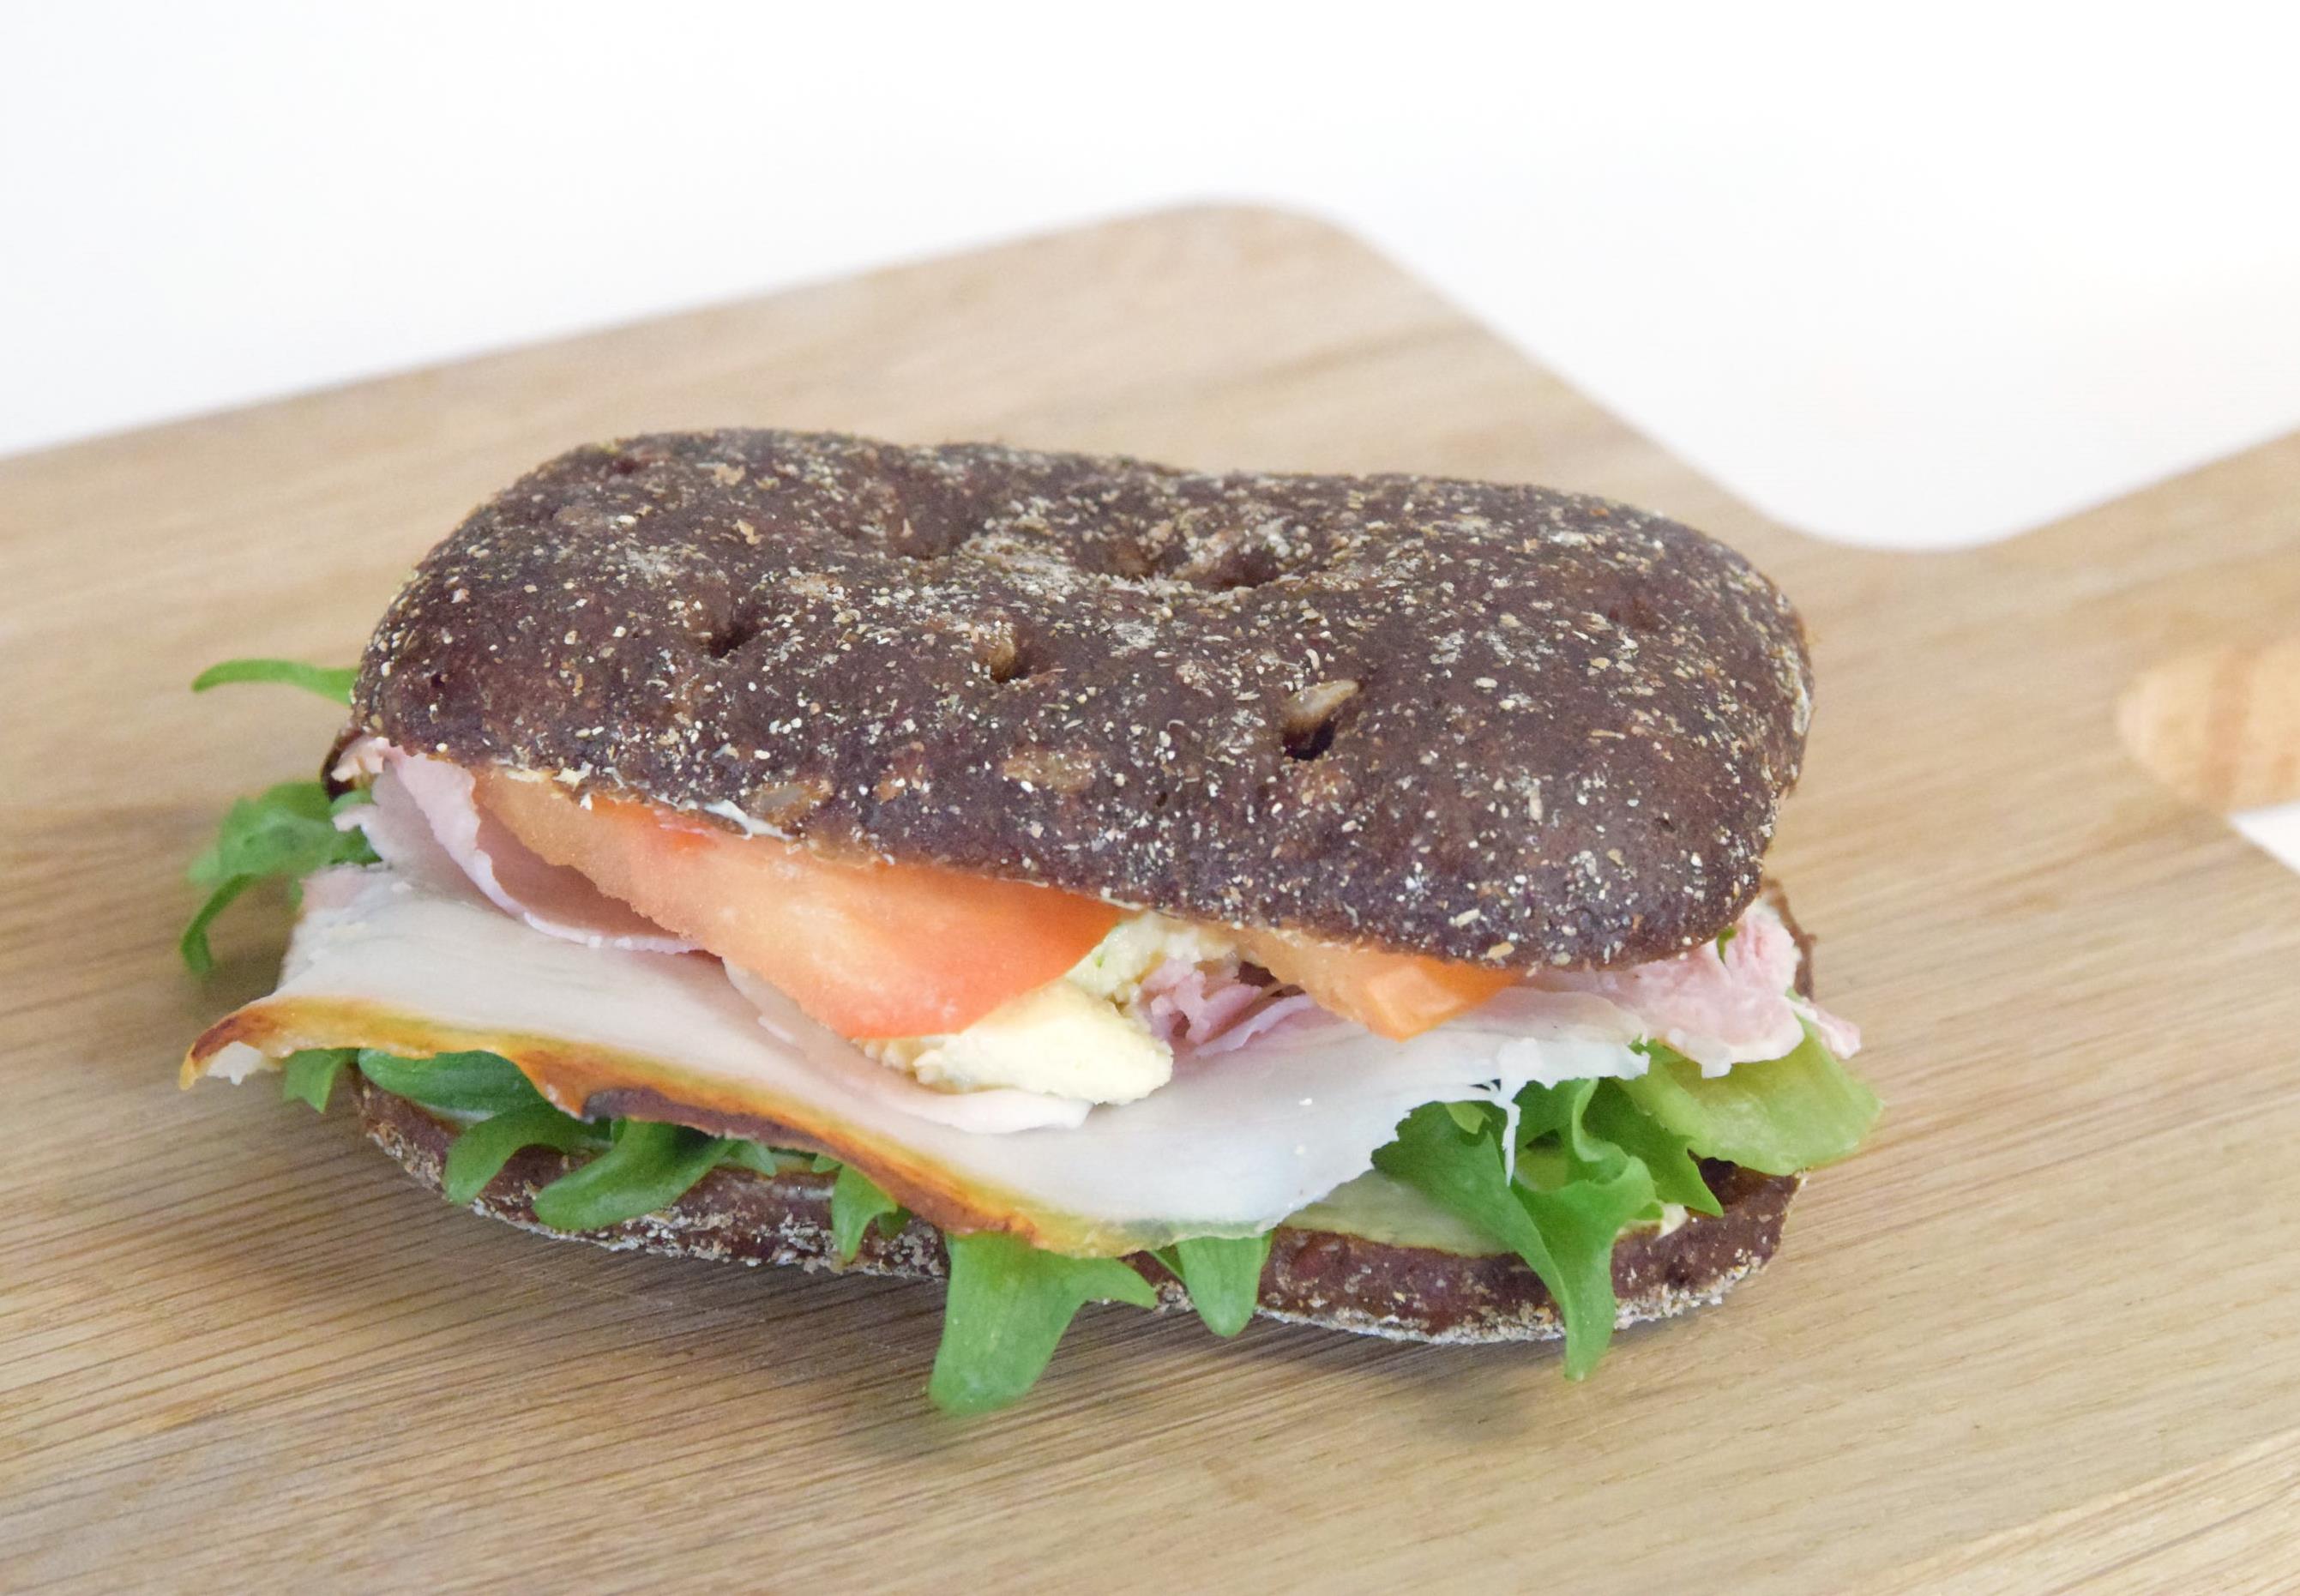 Калорийность бутерброда с черным хлебом